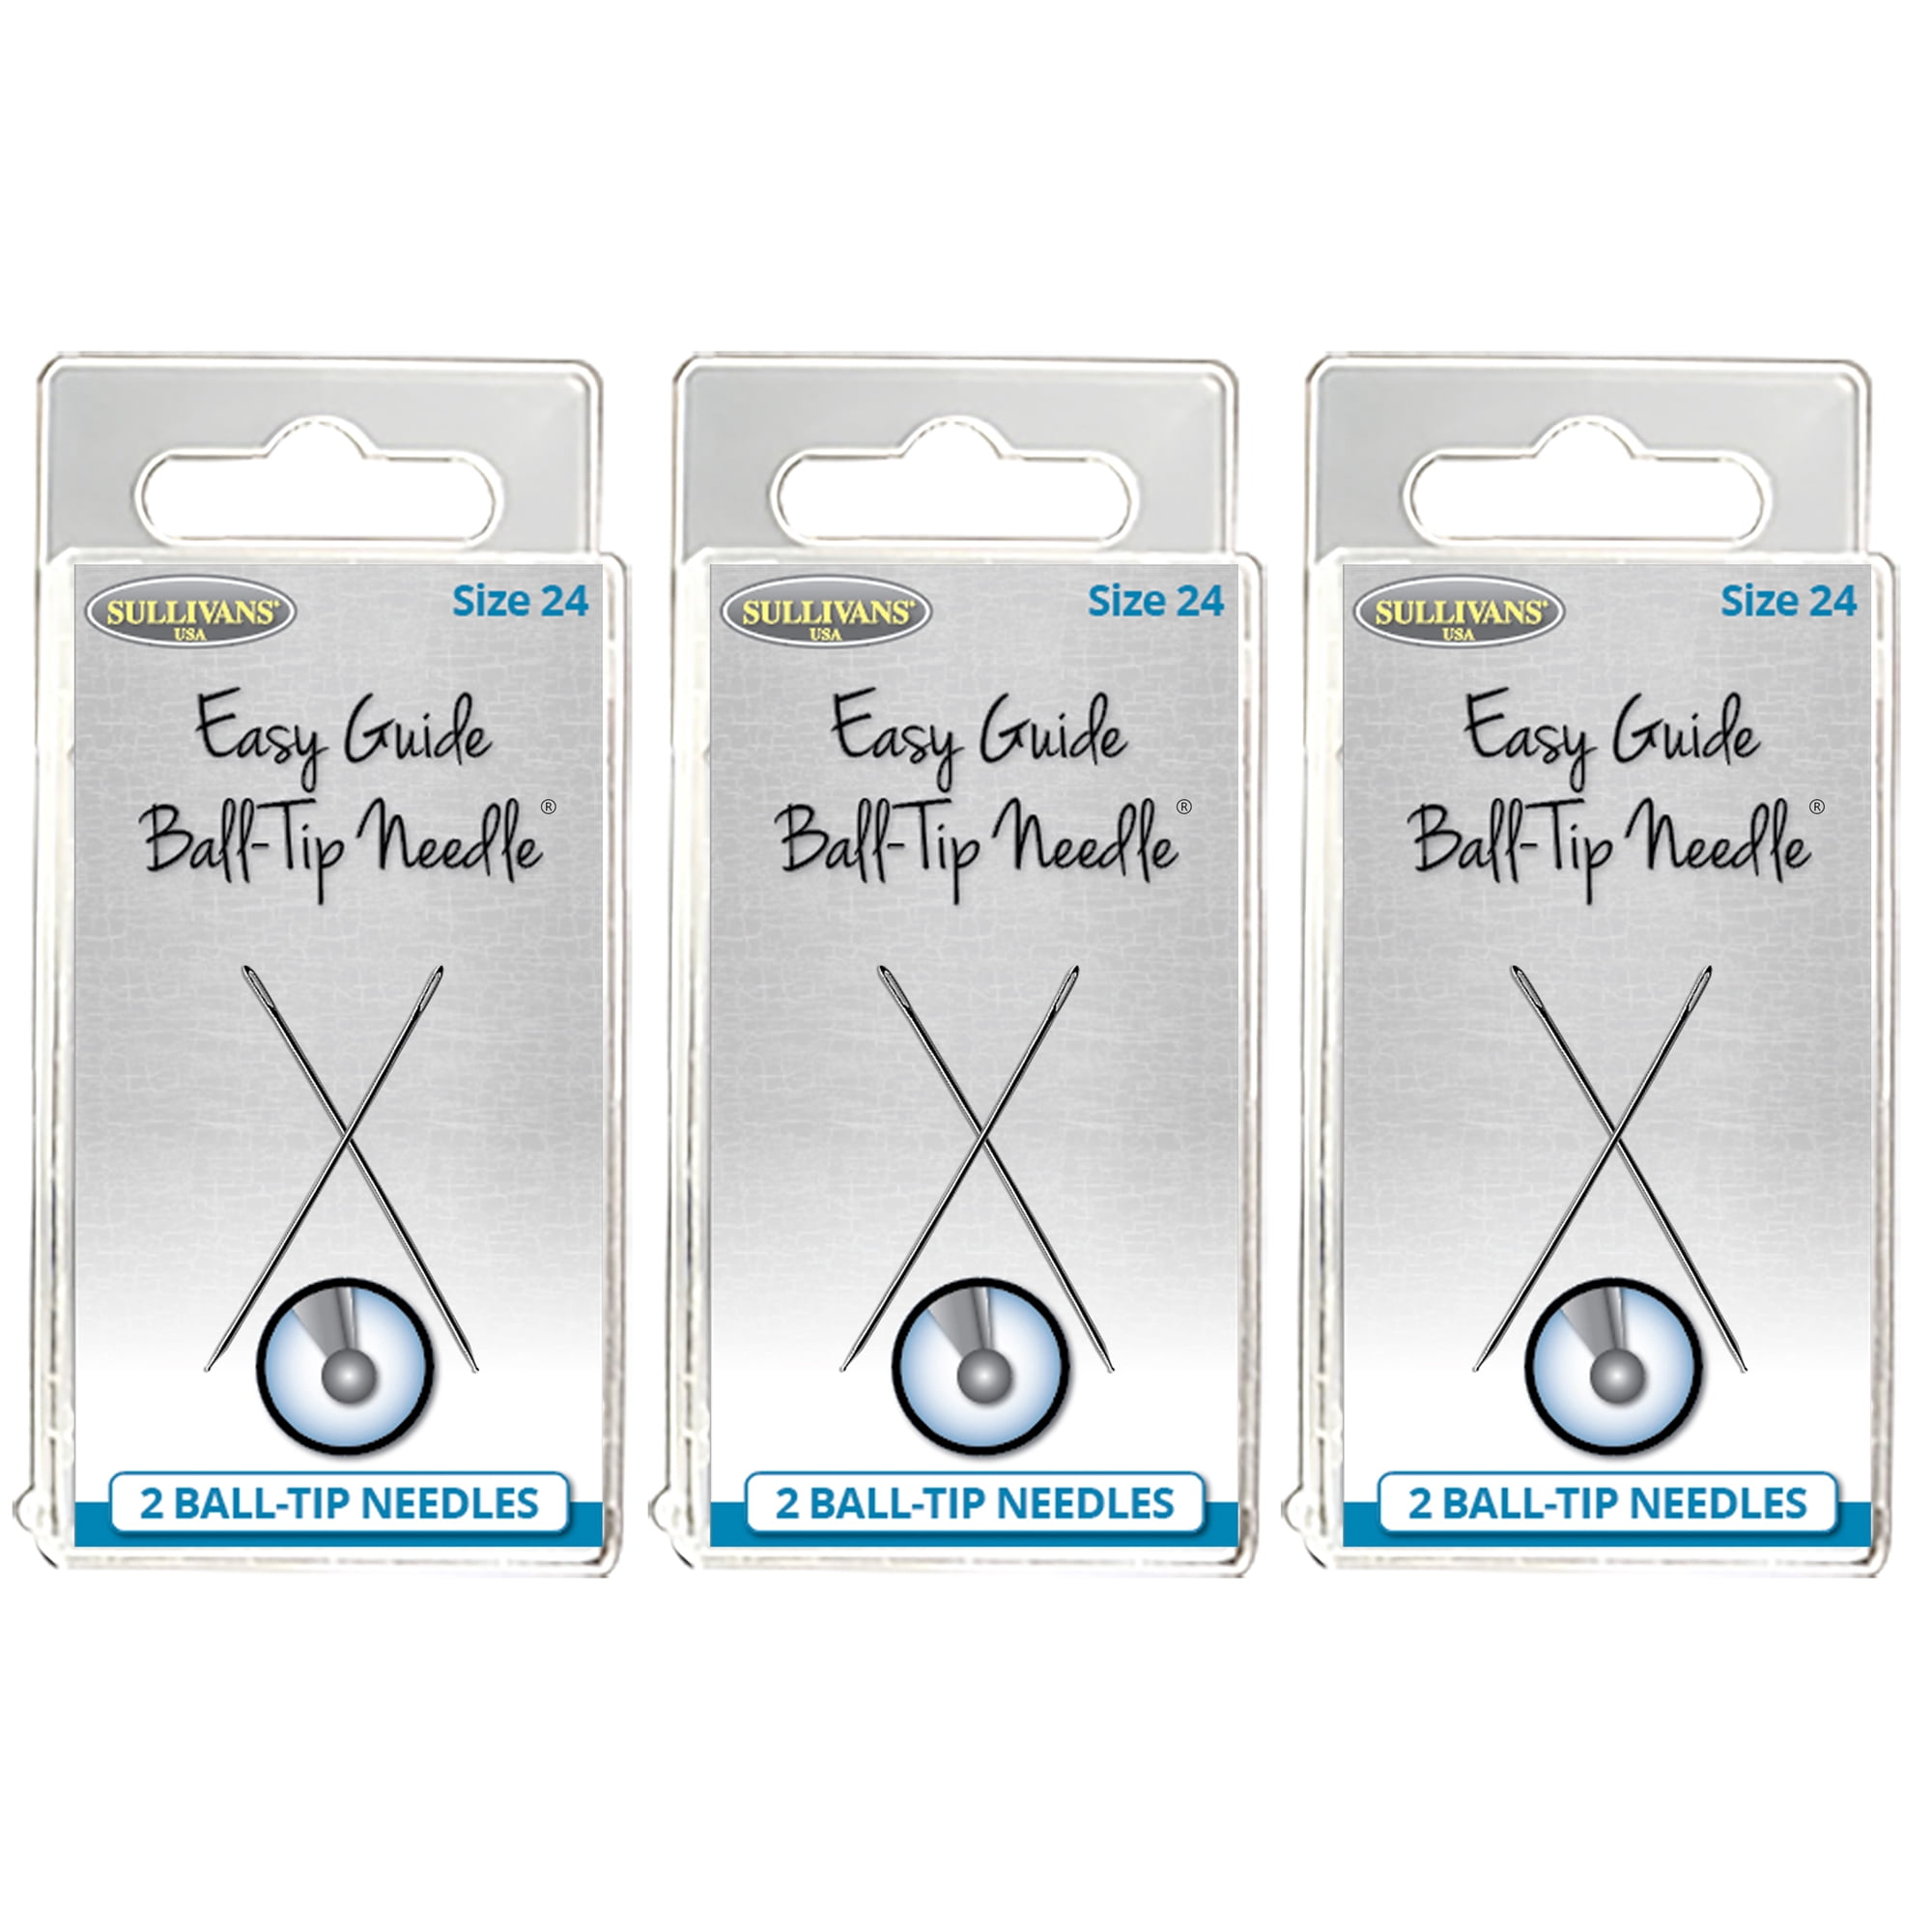 Easy Guide Ball-Tip Needle® Bulk - Sullivans USA